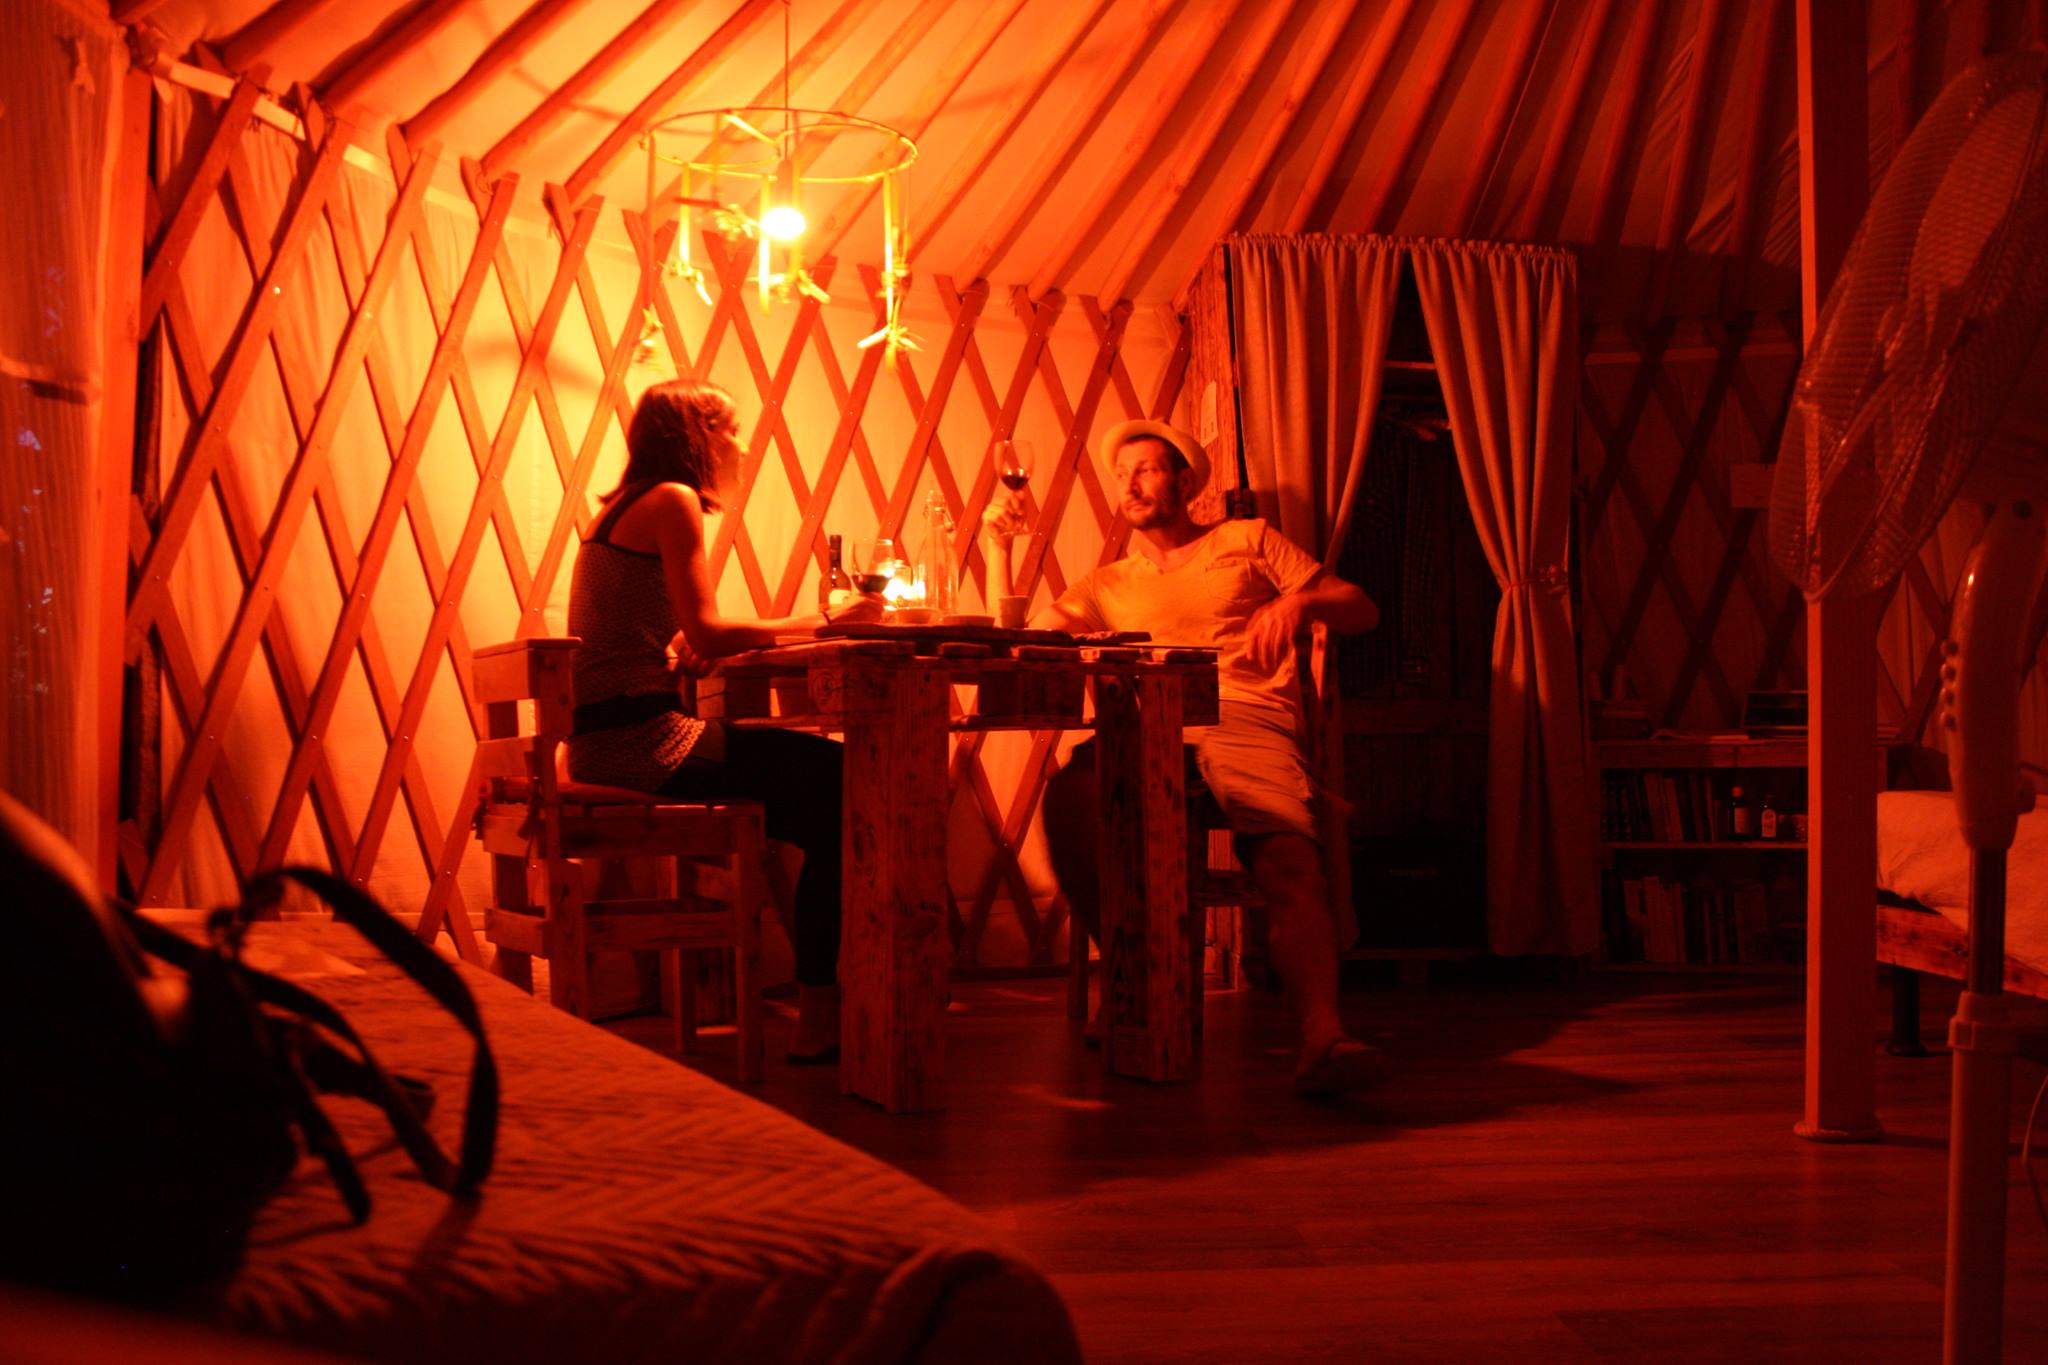 Luoghi insoliti: dormire in una yurta nella campagna toscana